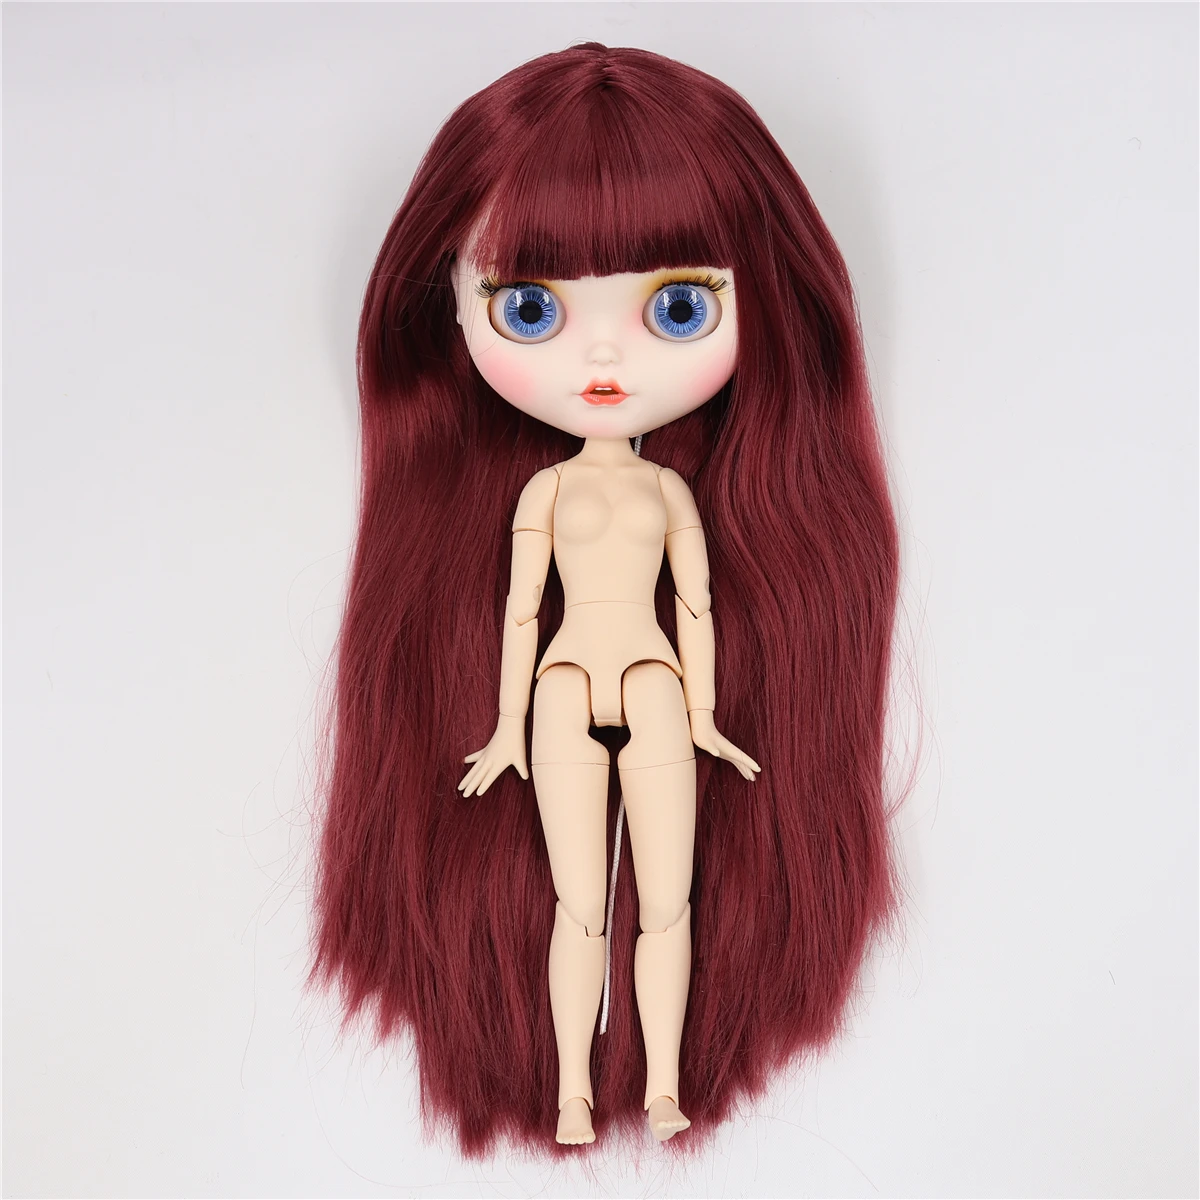 Заводская кукла blyth 1/6, игрушка, шарнир, тело, белая кожа, матовое лицо, Заказная кукла, индивидуальное лицо, 30 см